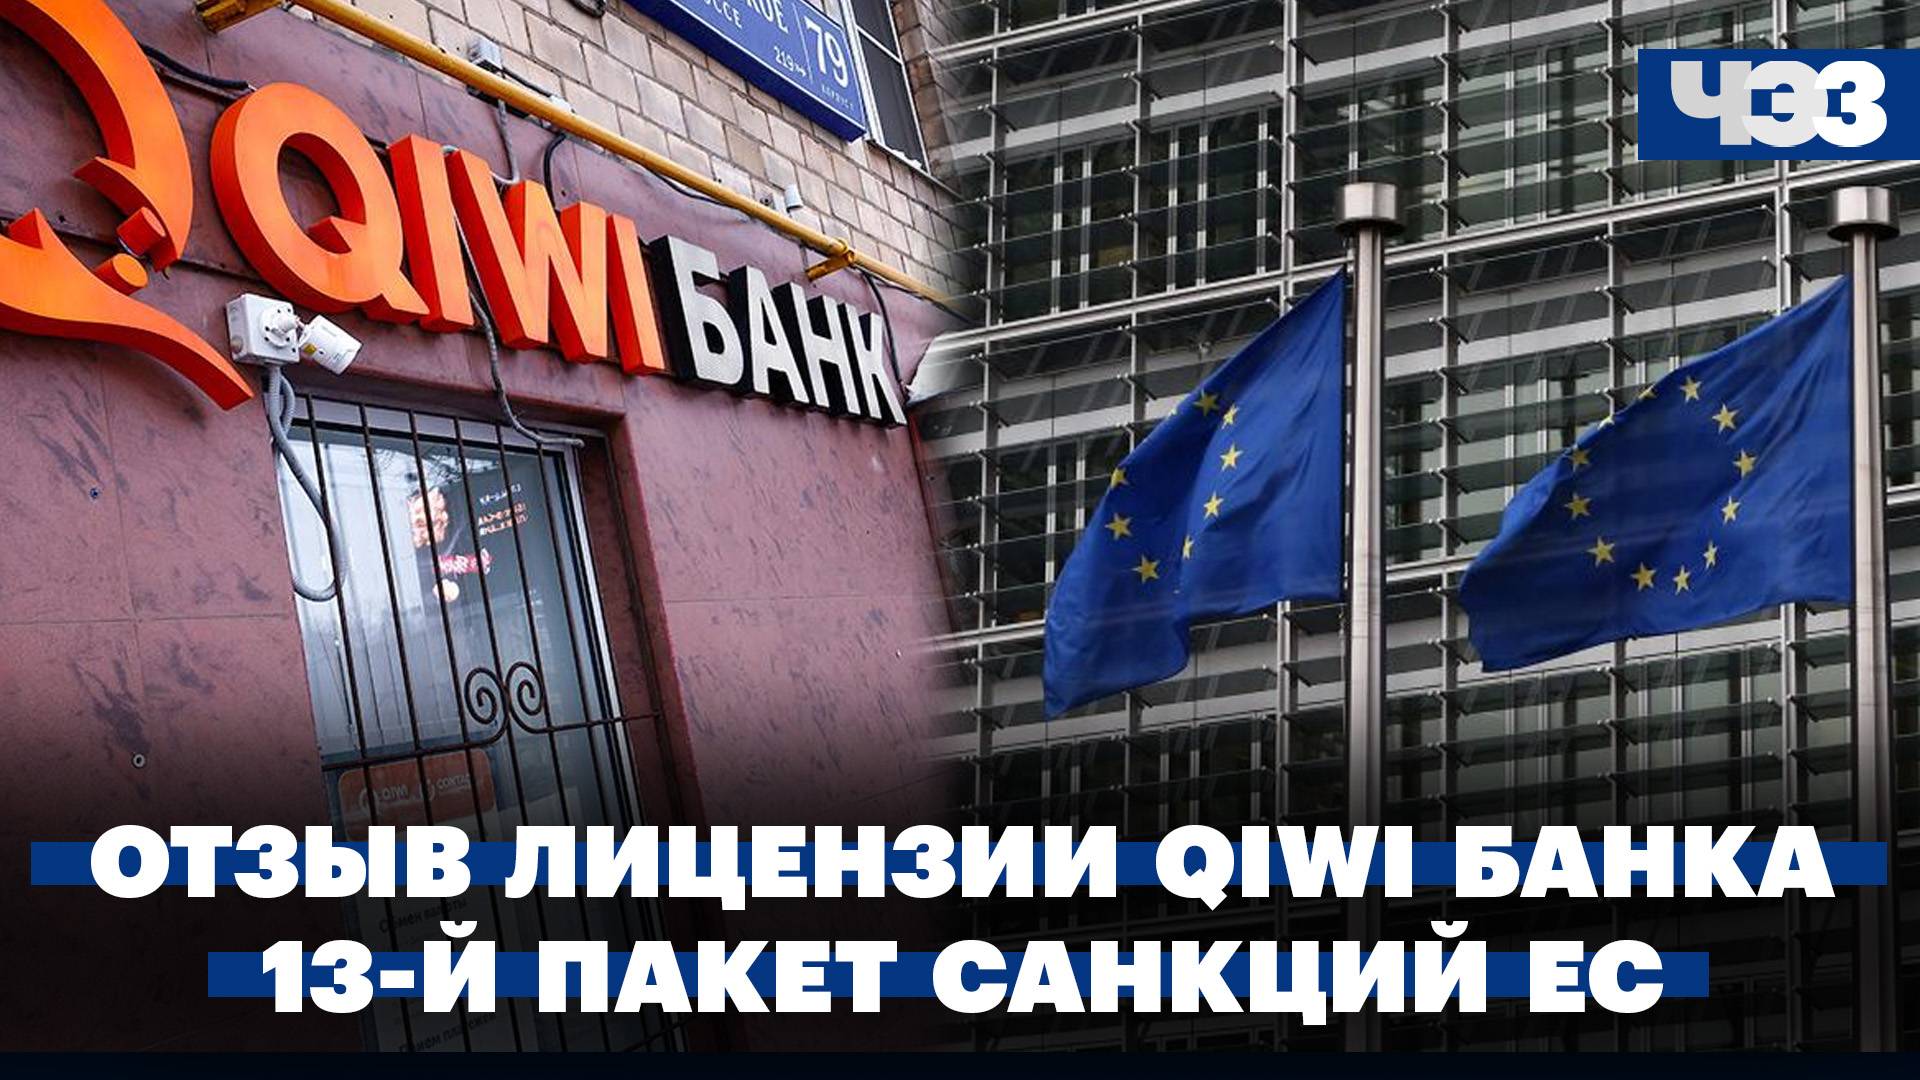 Банк России отозвал лицензию у QIWI Банка. ЕС согласовал 13-й пакет санкций против России